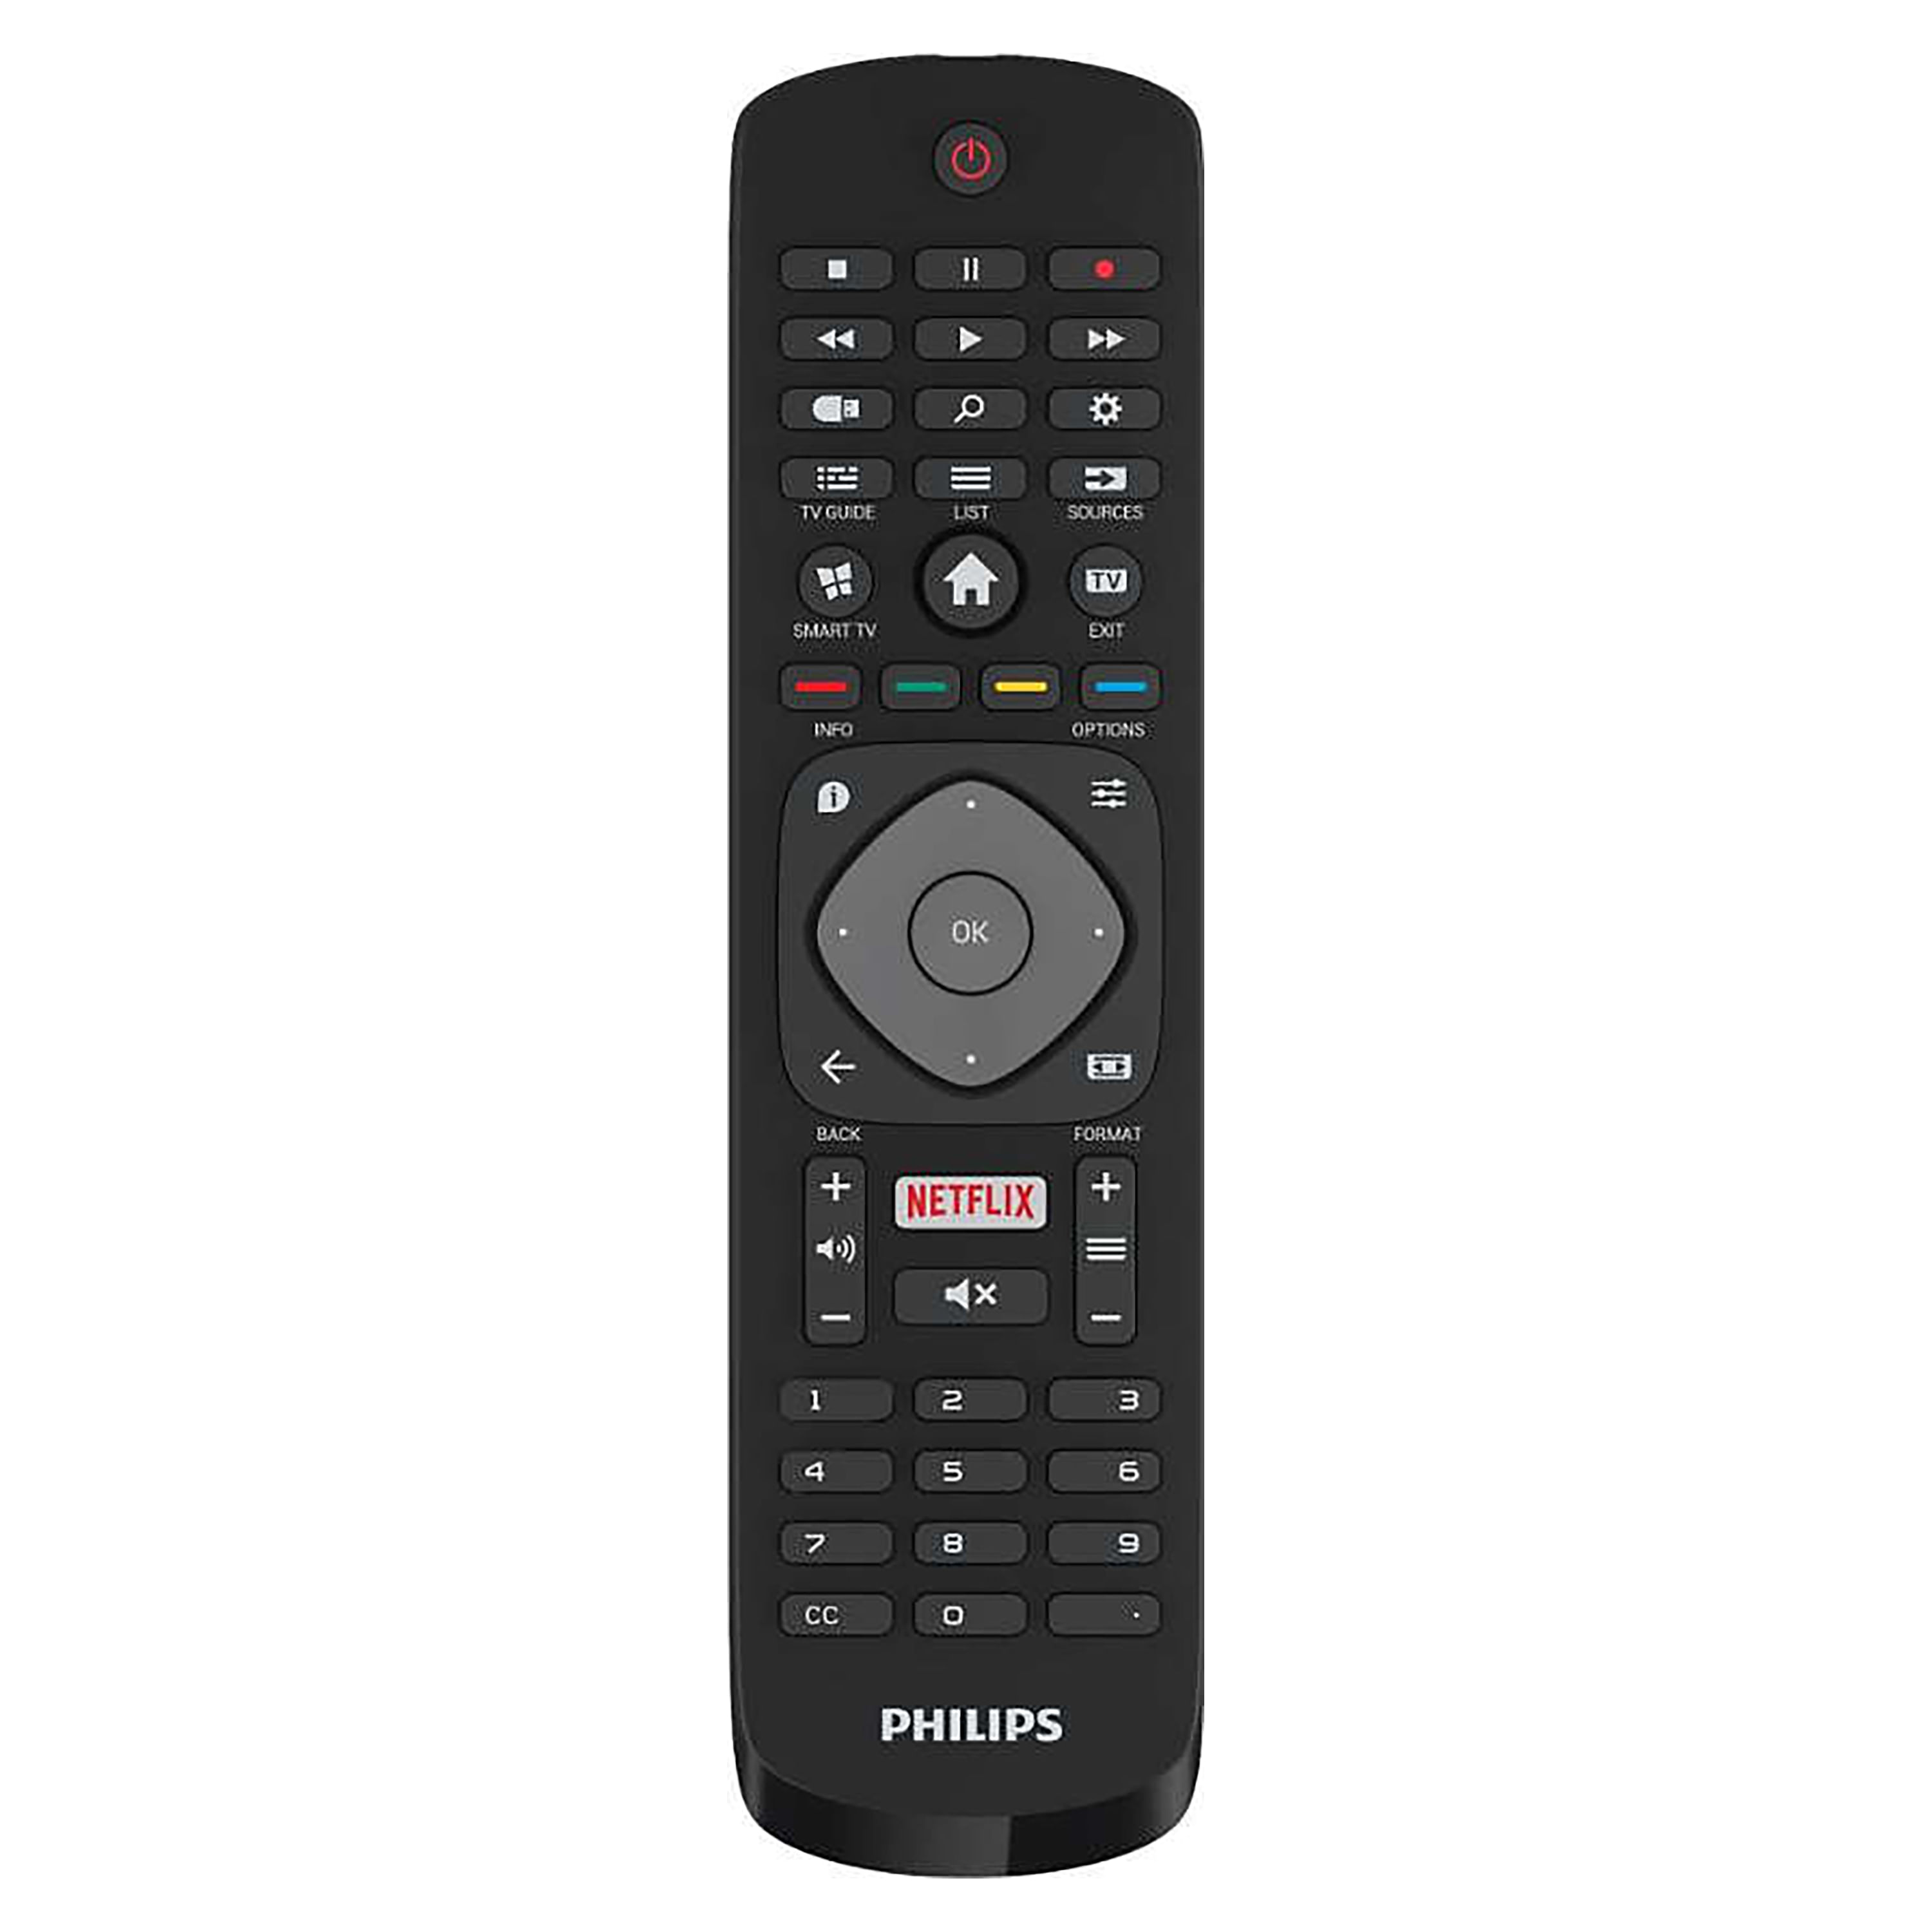 Pantalla Led Smart Tv Philips 43 Pulgadas Modelo Pfd5813